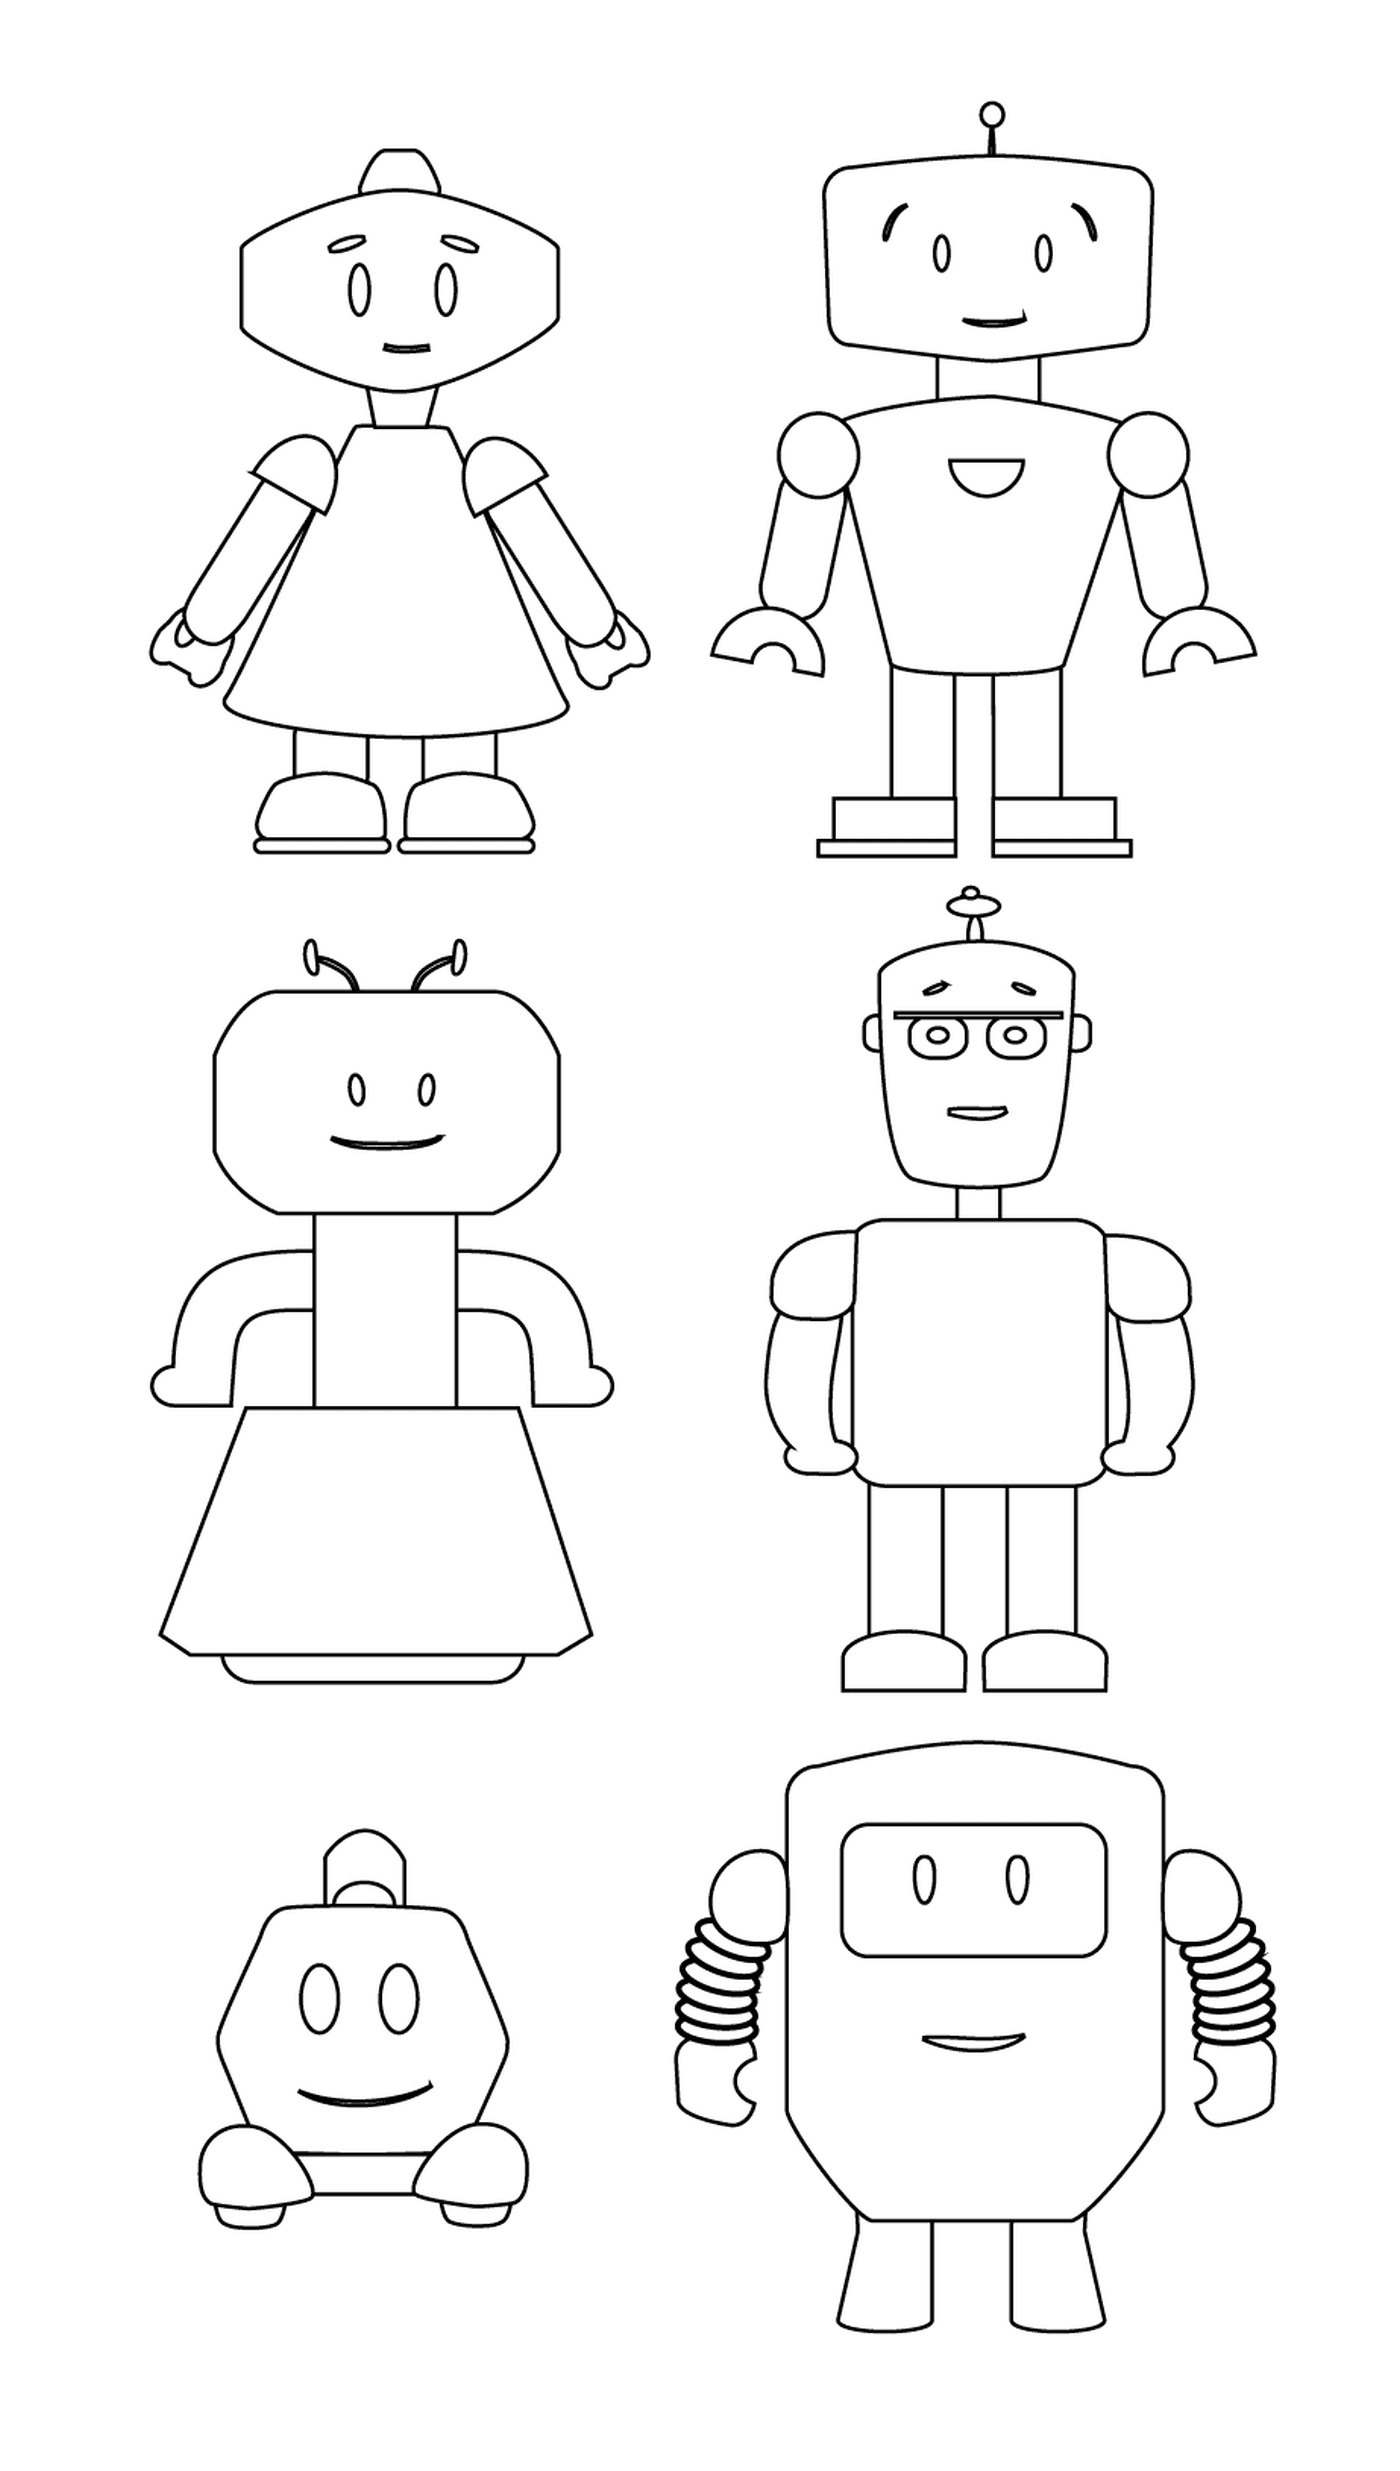   Famille de robots adorables 